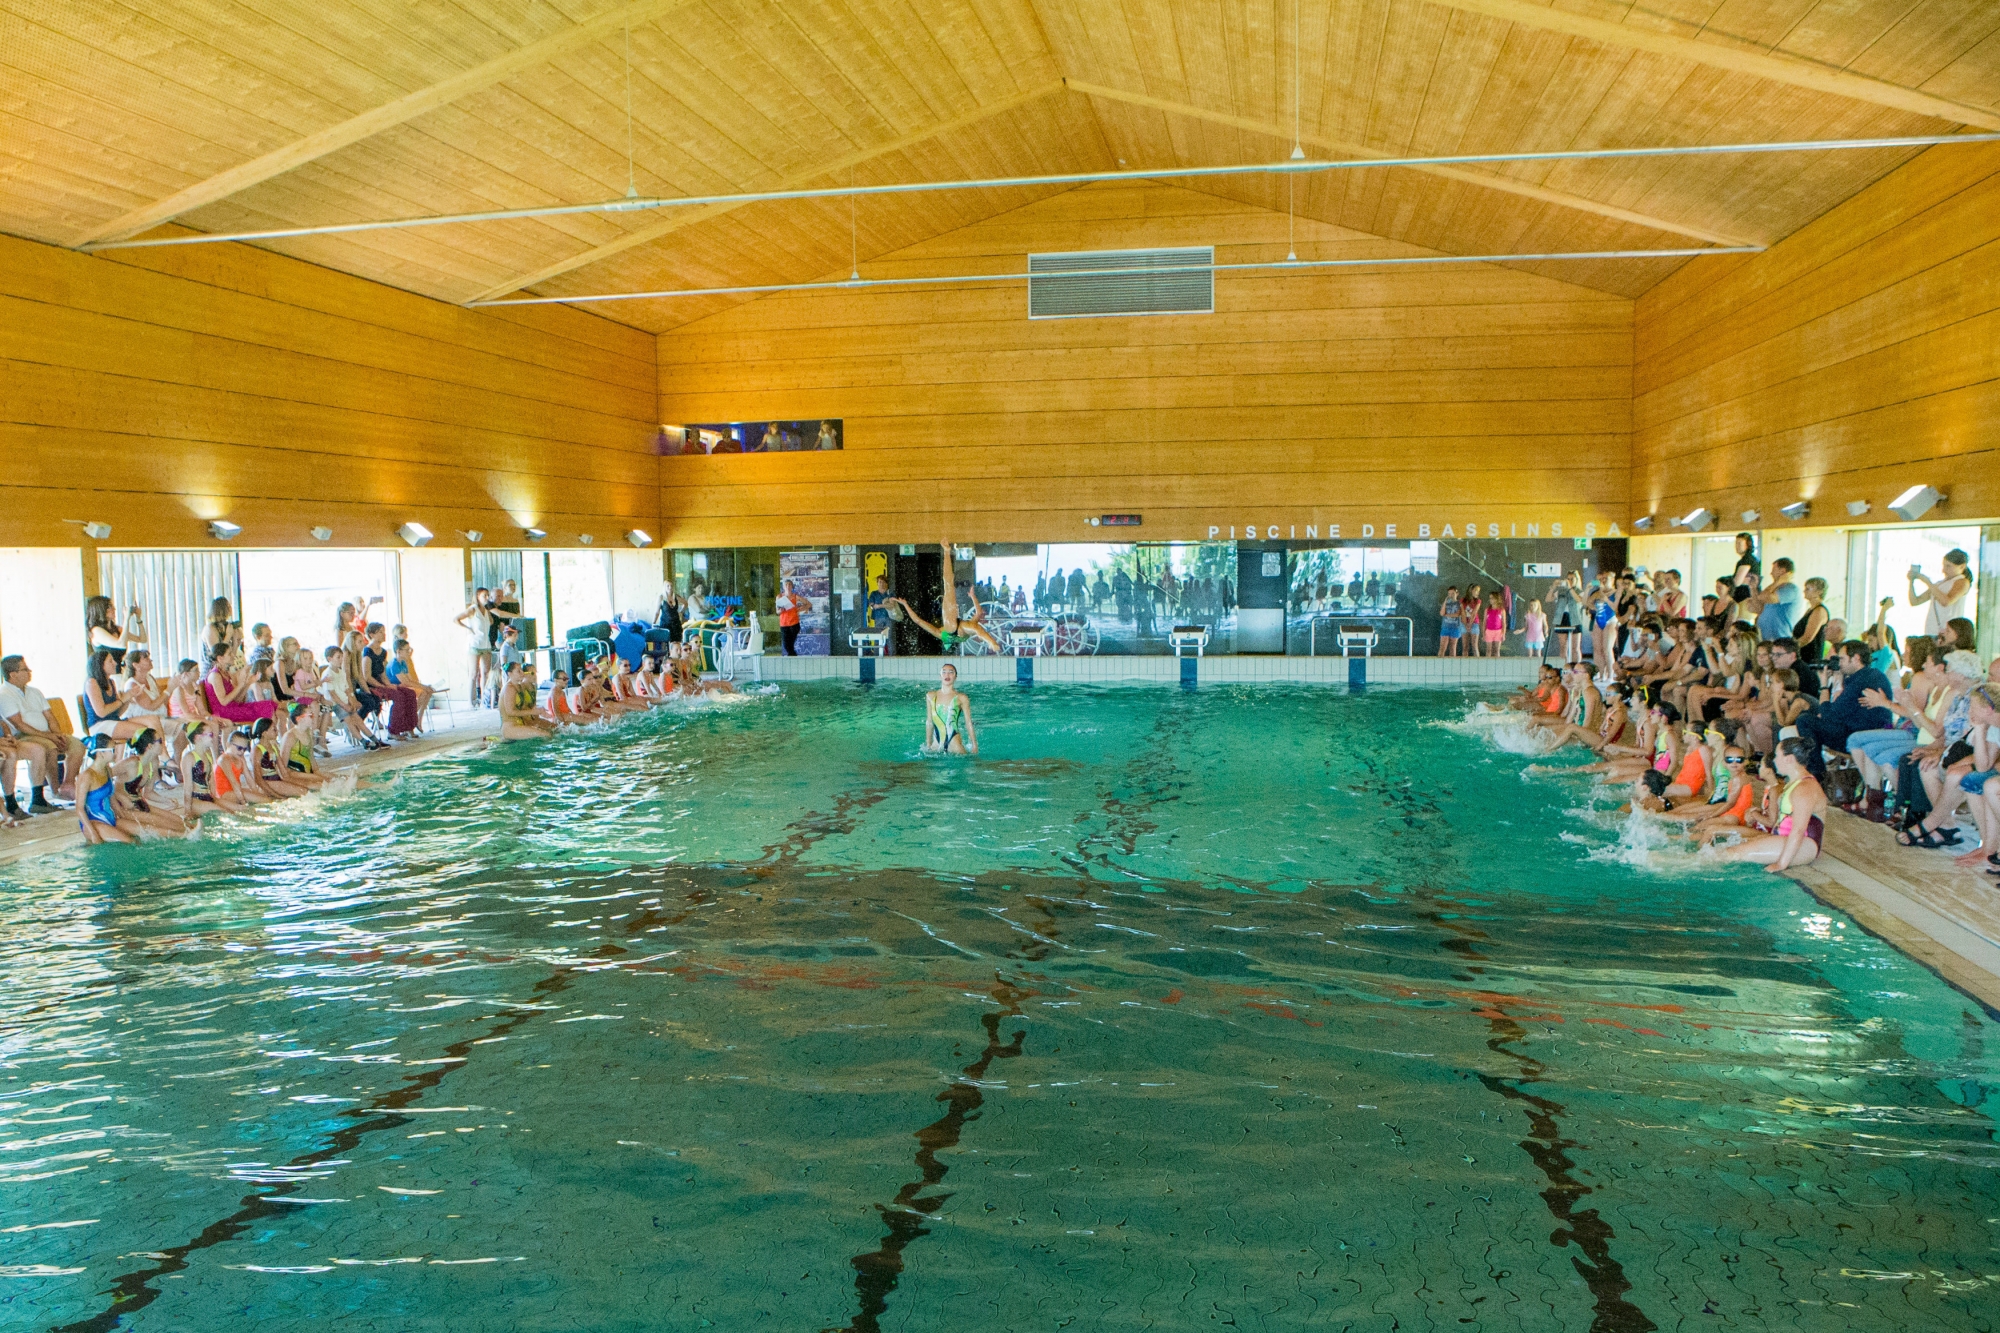 Les activités aquatiques de la piscine de Bassins passent en de nouvelles mains.